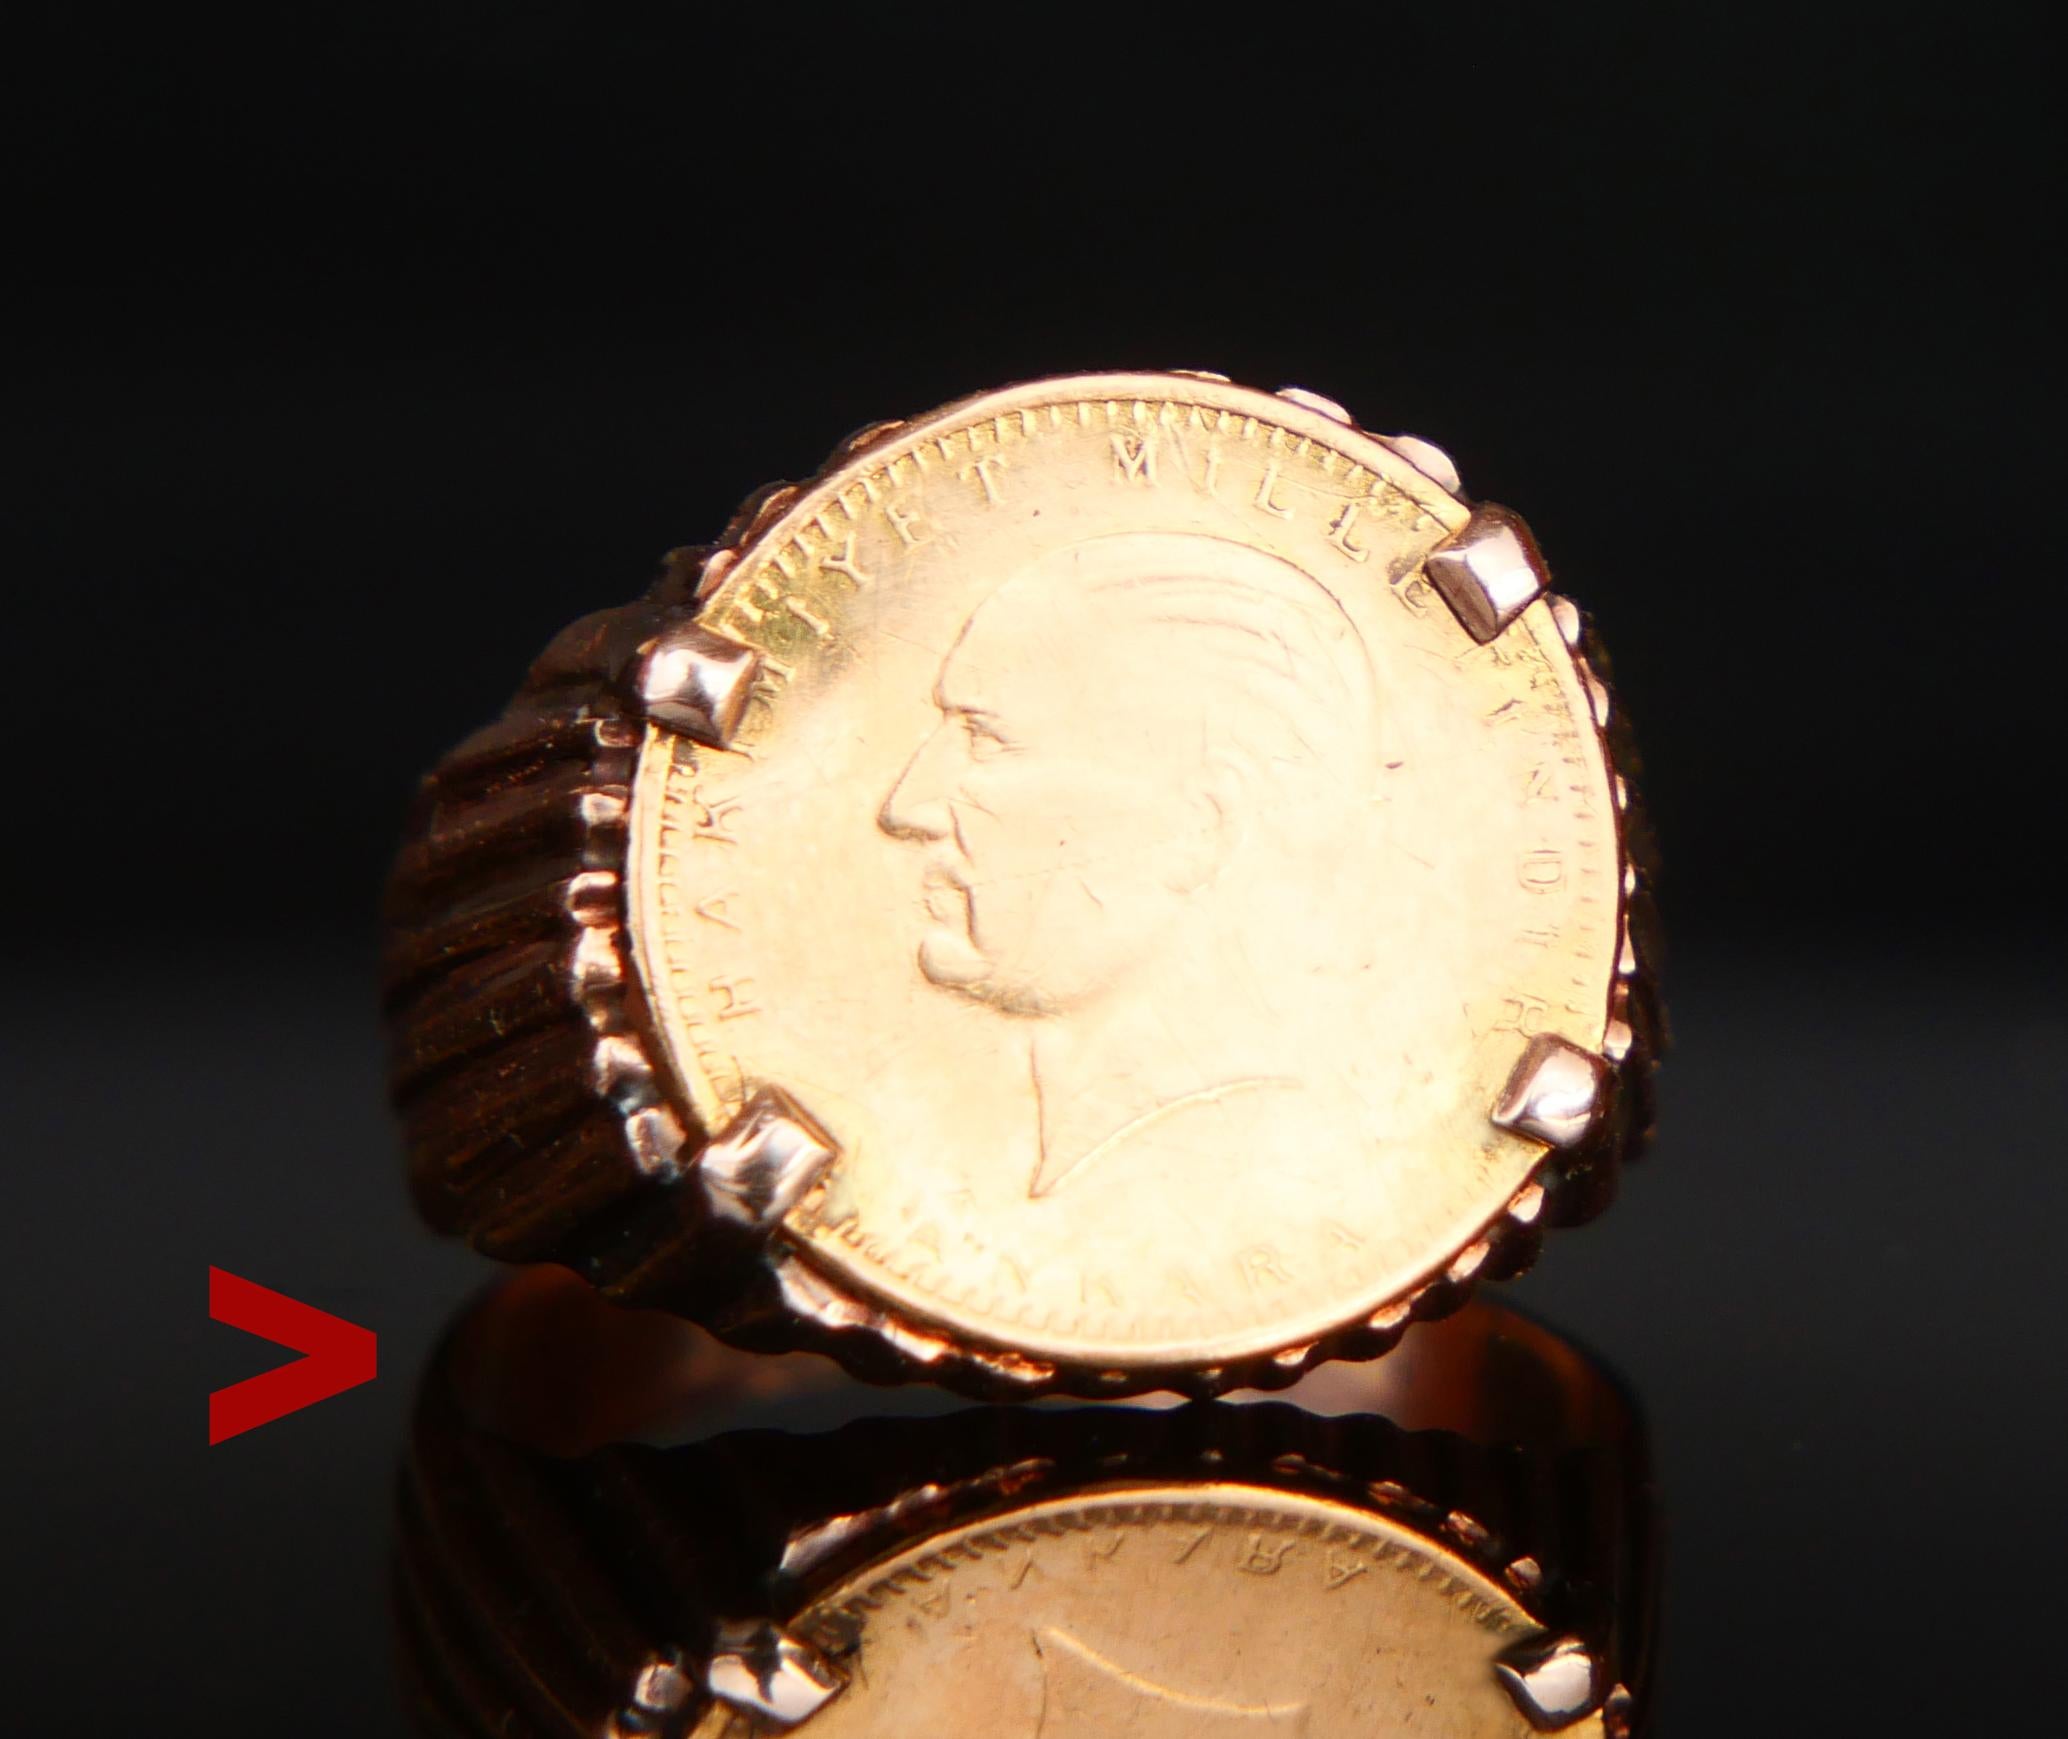 Ein Ring mit türkischer Münze.

Massive 14k Rose Gold Band mit Lünette gesetzt echte türkische massiv Ø14mm 22K Gelbgold 25 Kurush Münze im Jahr 1969 geprägt.

Die Vorderseite der Münze zeigt das Profilbild von Mustafa Kemal Atatürk, dem ersten